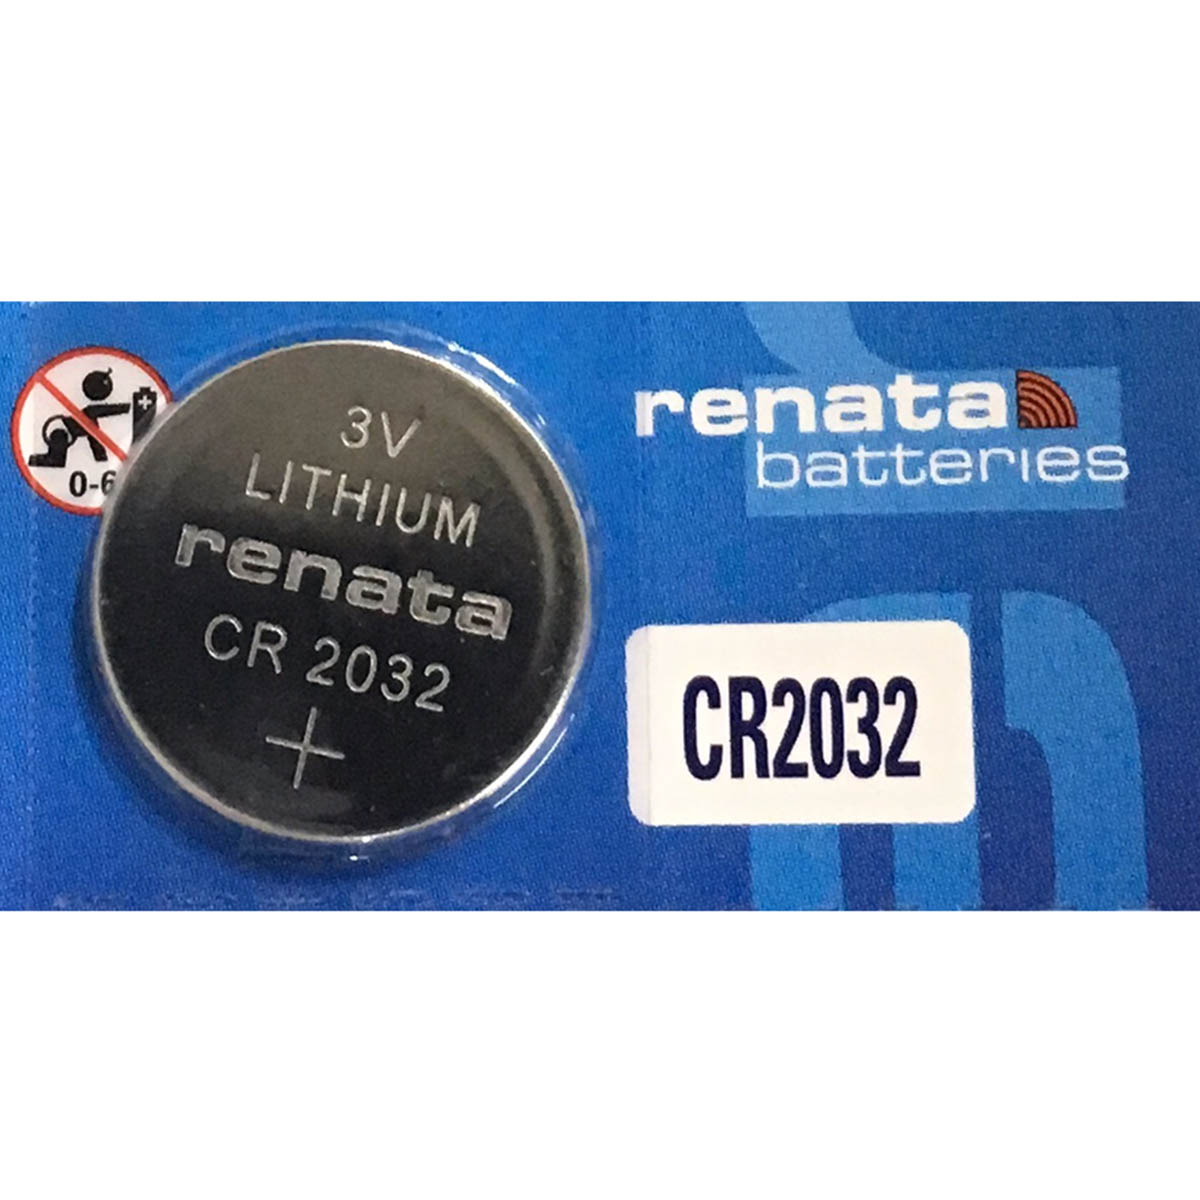 4 x Renata Batterie CR2032 Lithium 3V Knopfbatterie CR 2032 Knopfzelle 